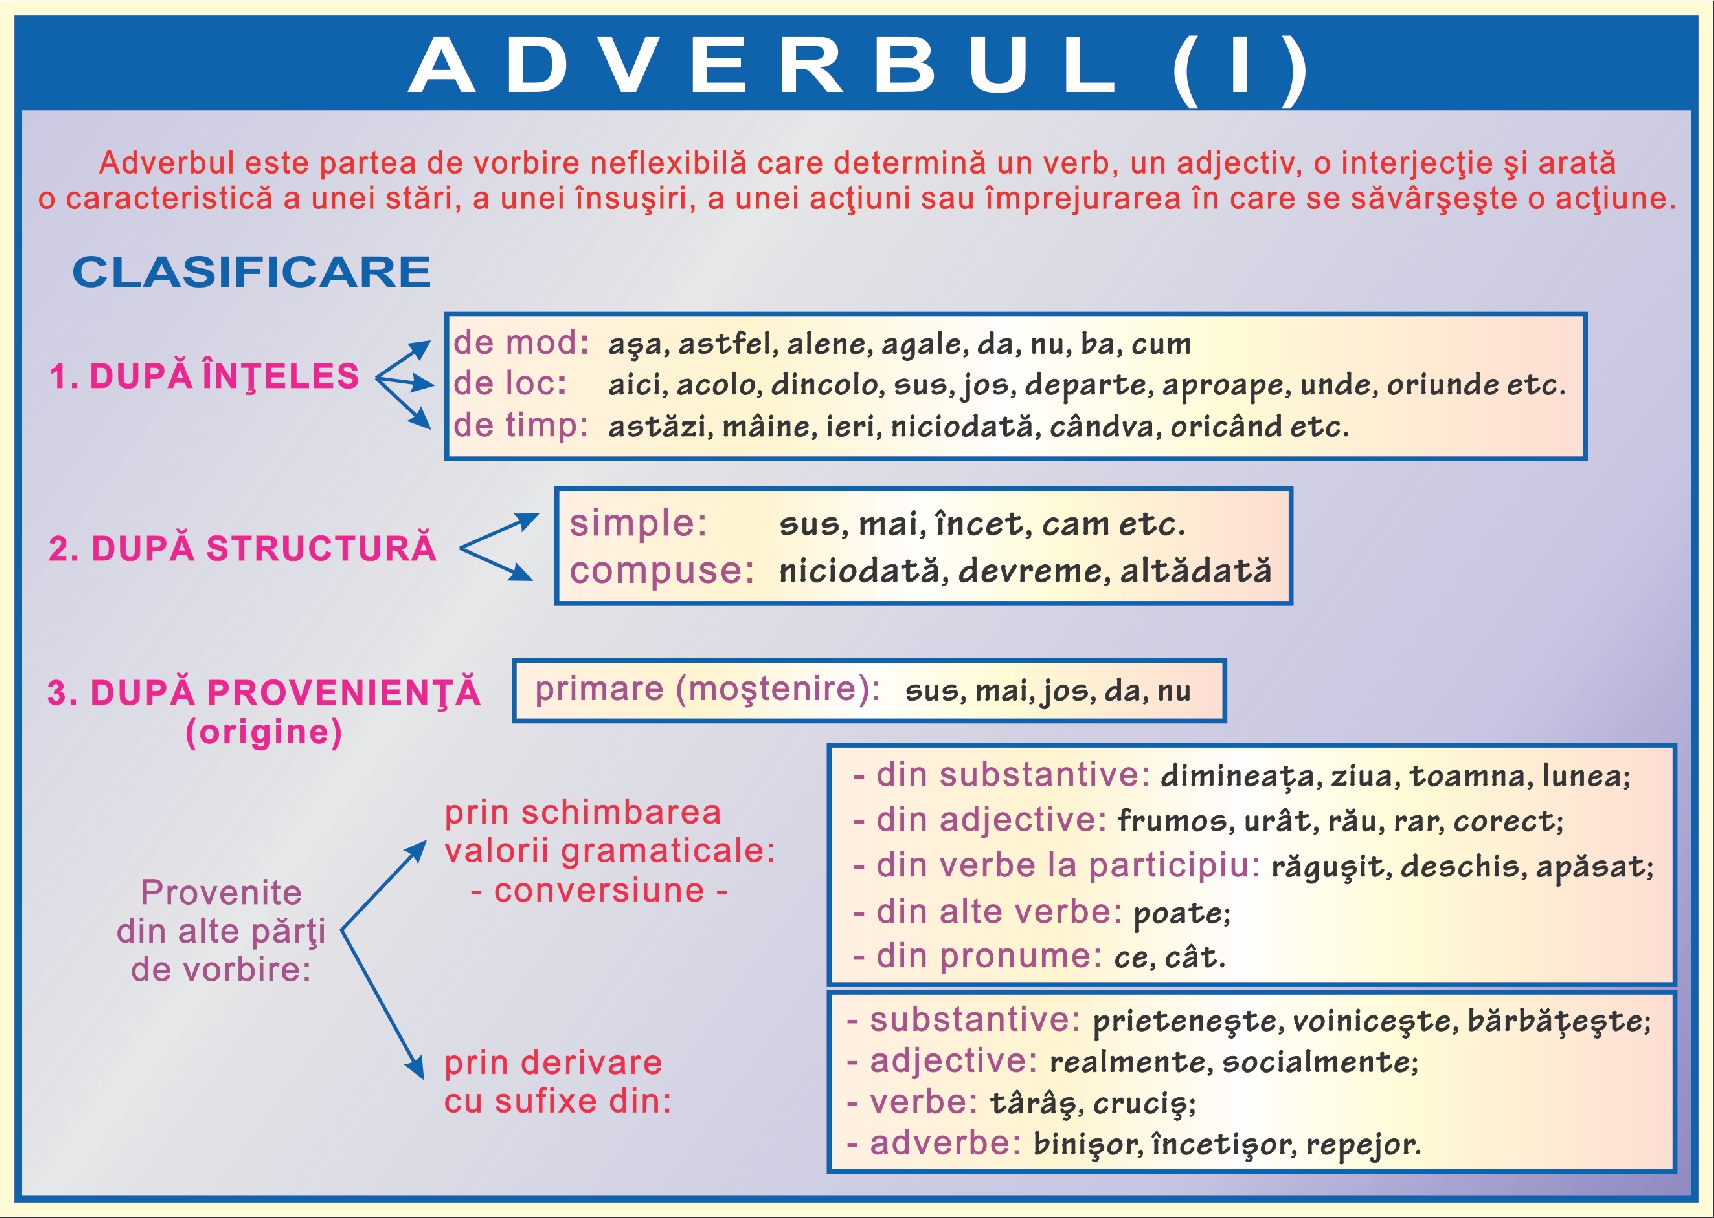 Adverbul - I